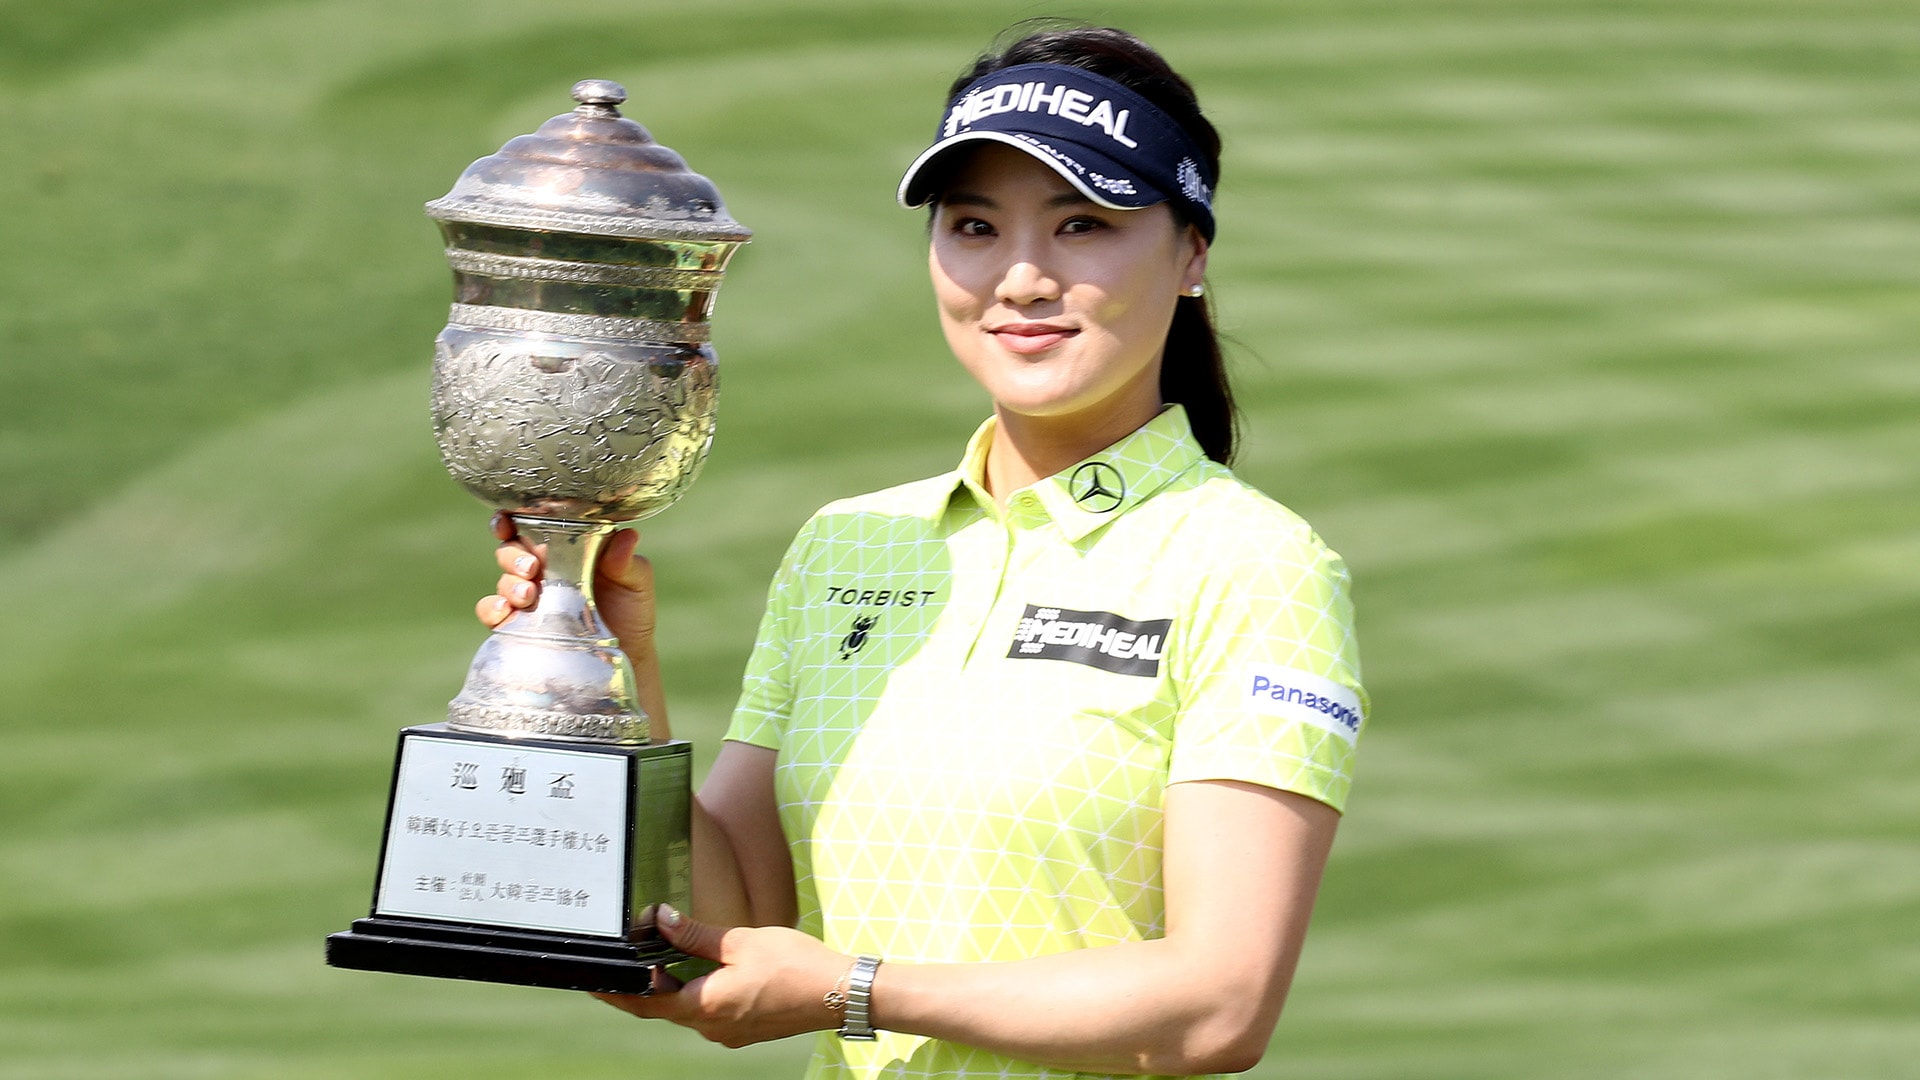 Chiến thắng Korea Women’s Open Sunday, Ryu So-yeon quyên góp 250 triệu Won tiền thưởng giúp cứu trợ Covid-19